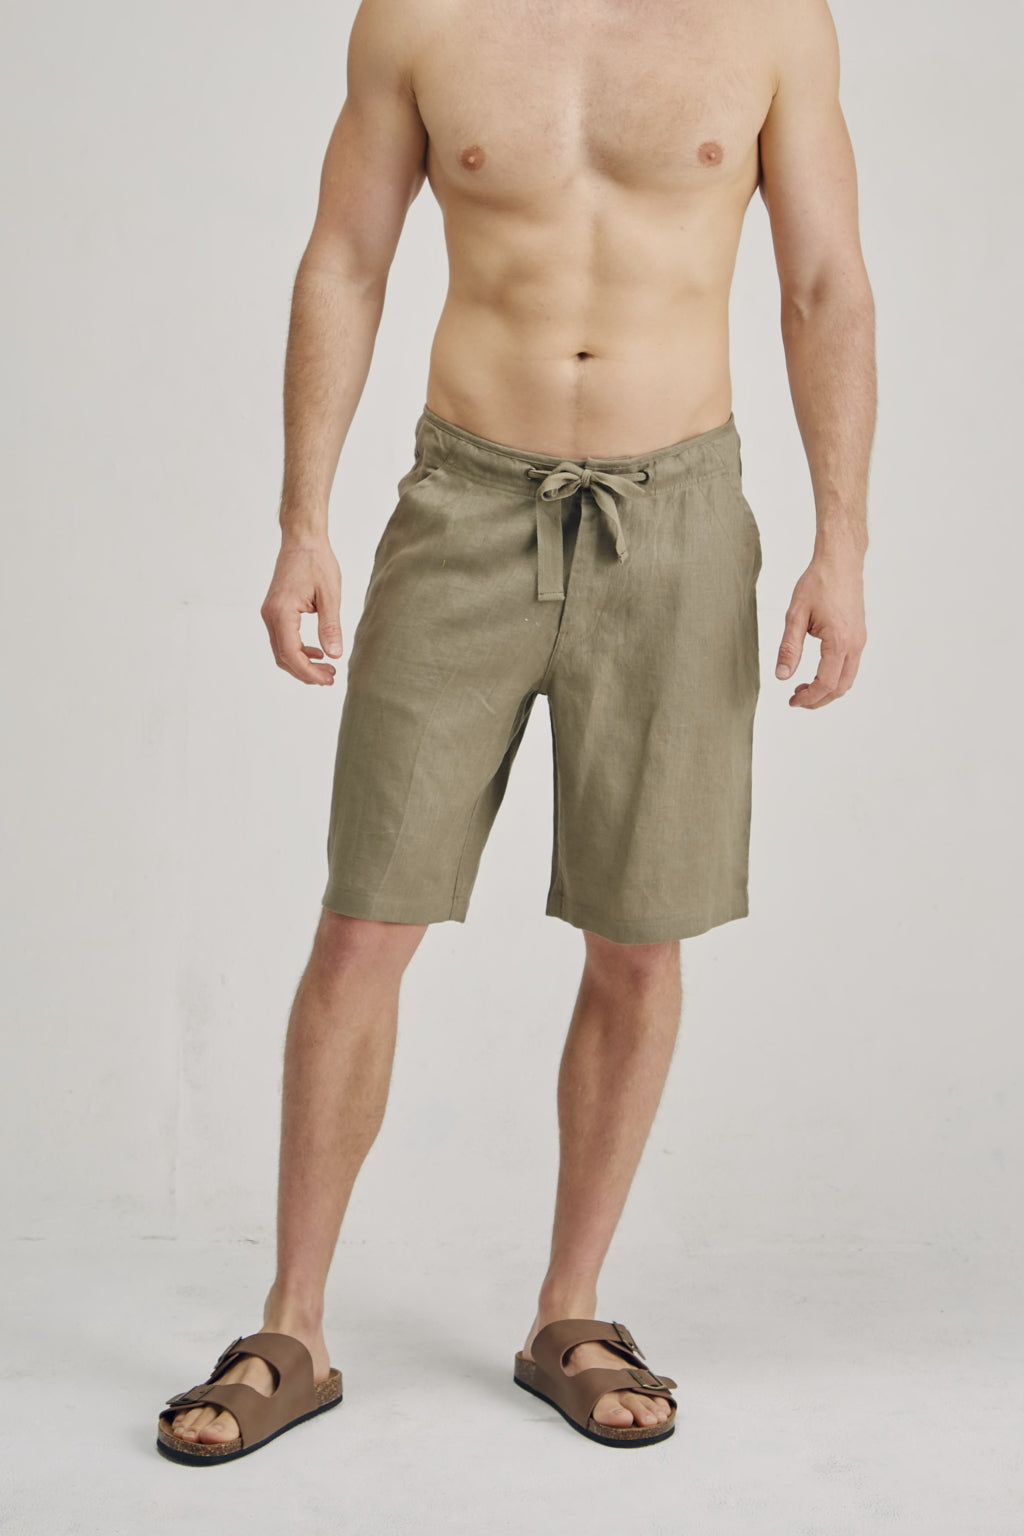 100% Hemp Drawstring Shorts | Khaki | Mens - HempStitch.